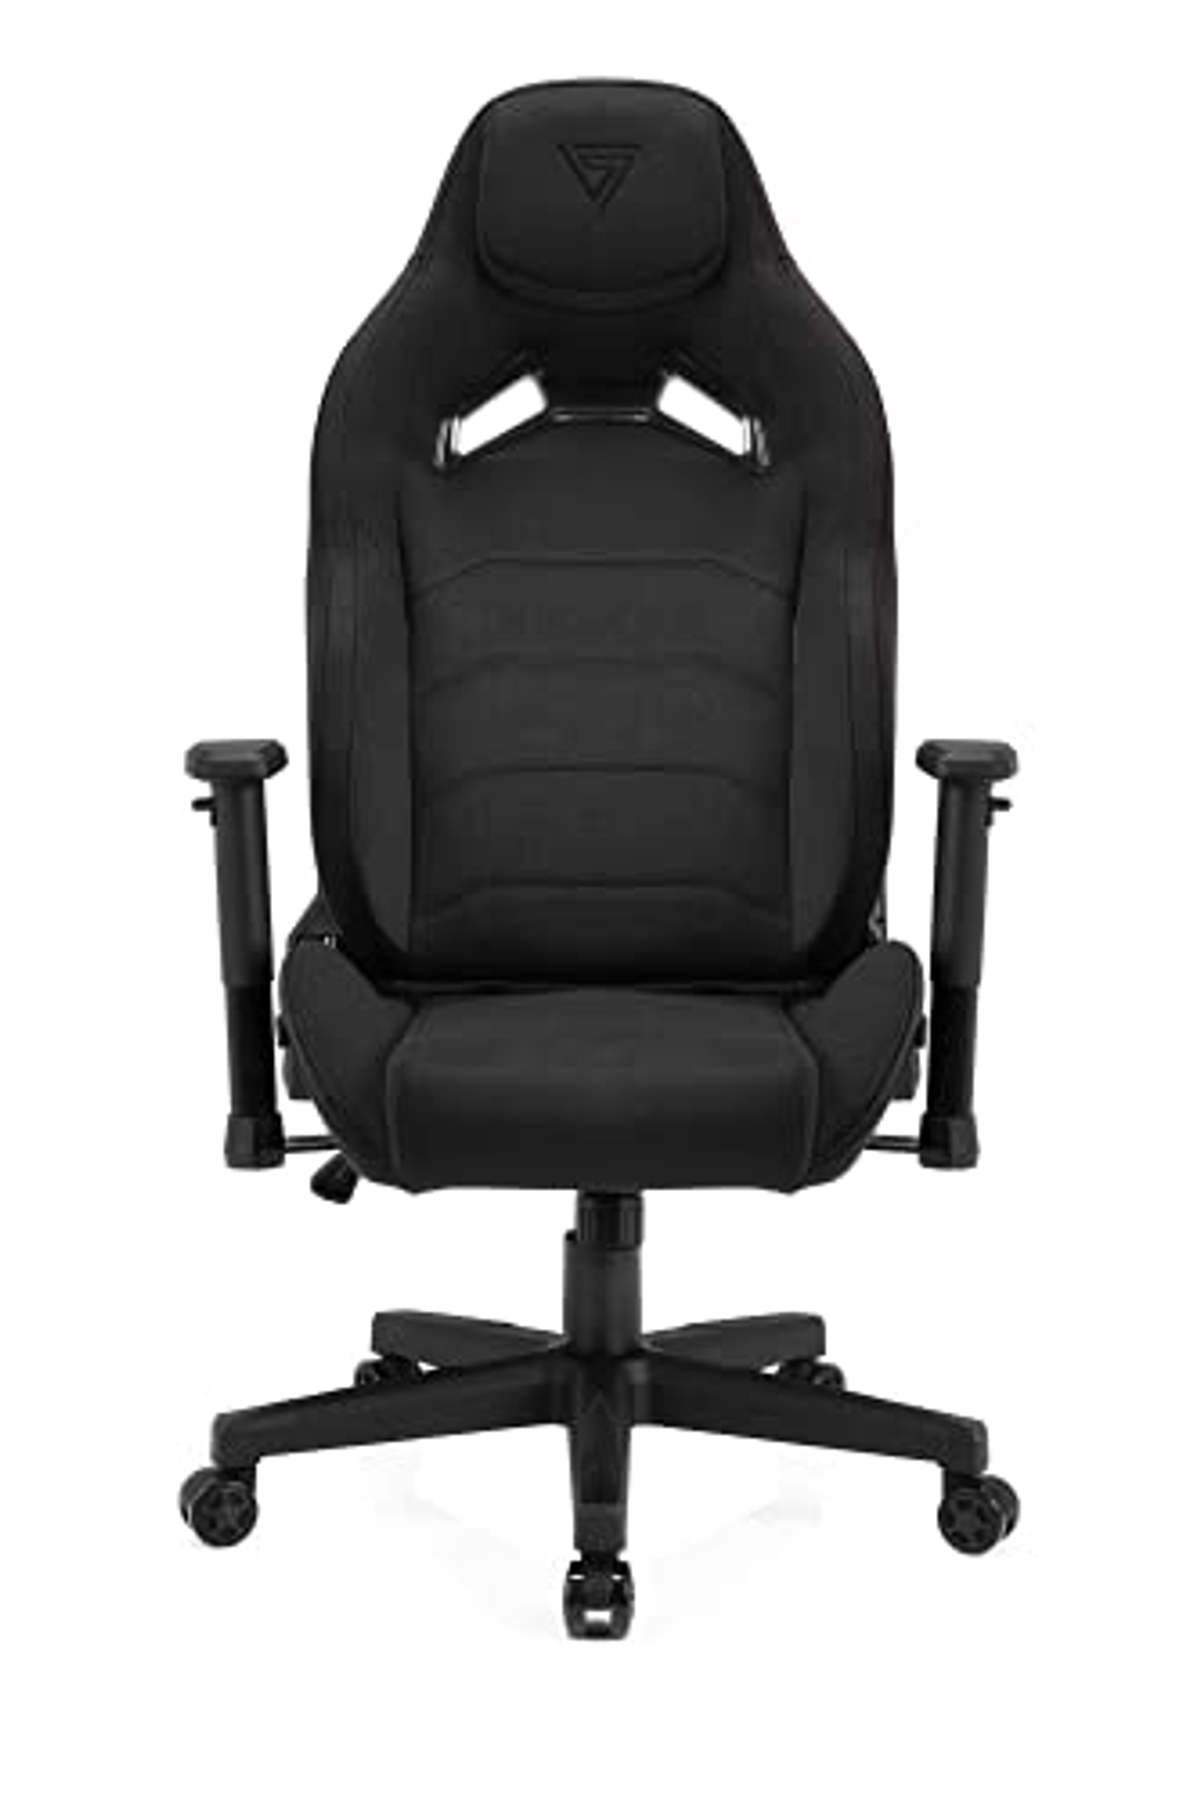 SENSE7 Gaming Stühle schwarz accessories Schwarz set, Vanguard SENSE7 Fabric